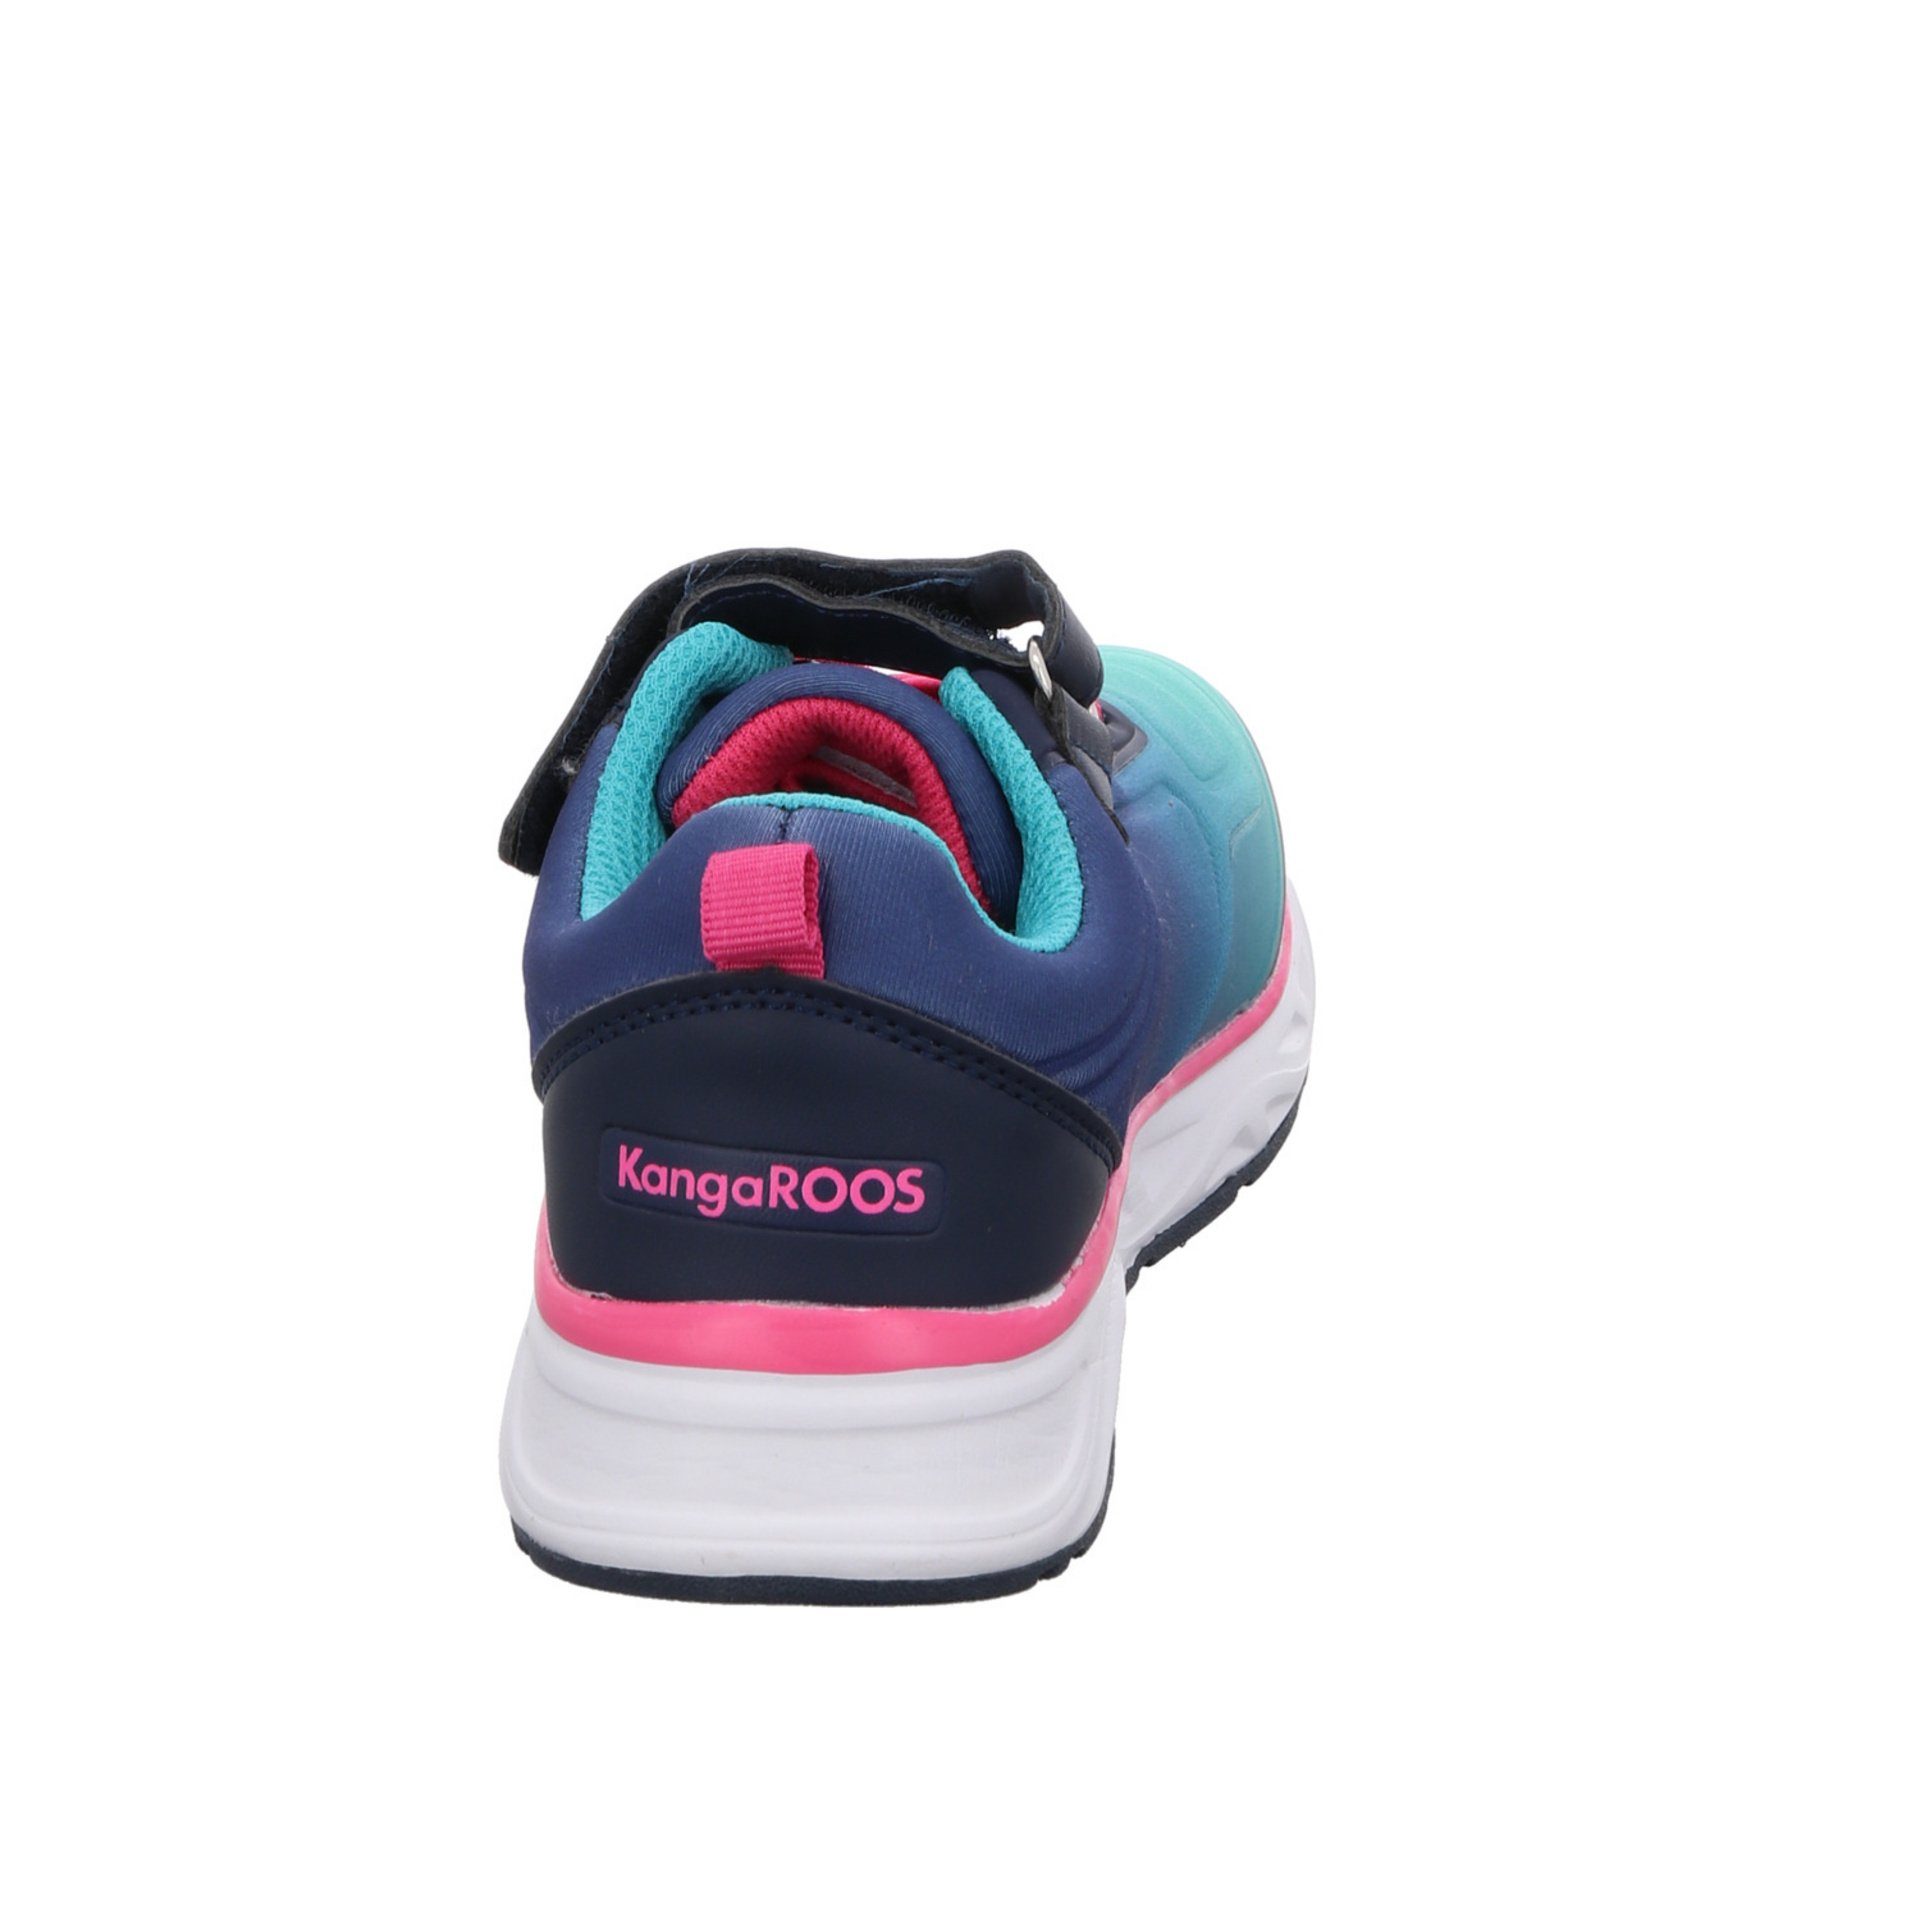 Airos K-OK KangaROOS navy/daisy/pink Sneaker Synthetikkombination Logoschriftzug Sneaker